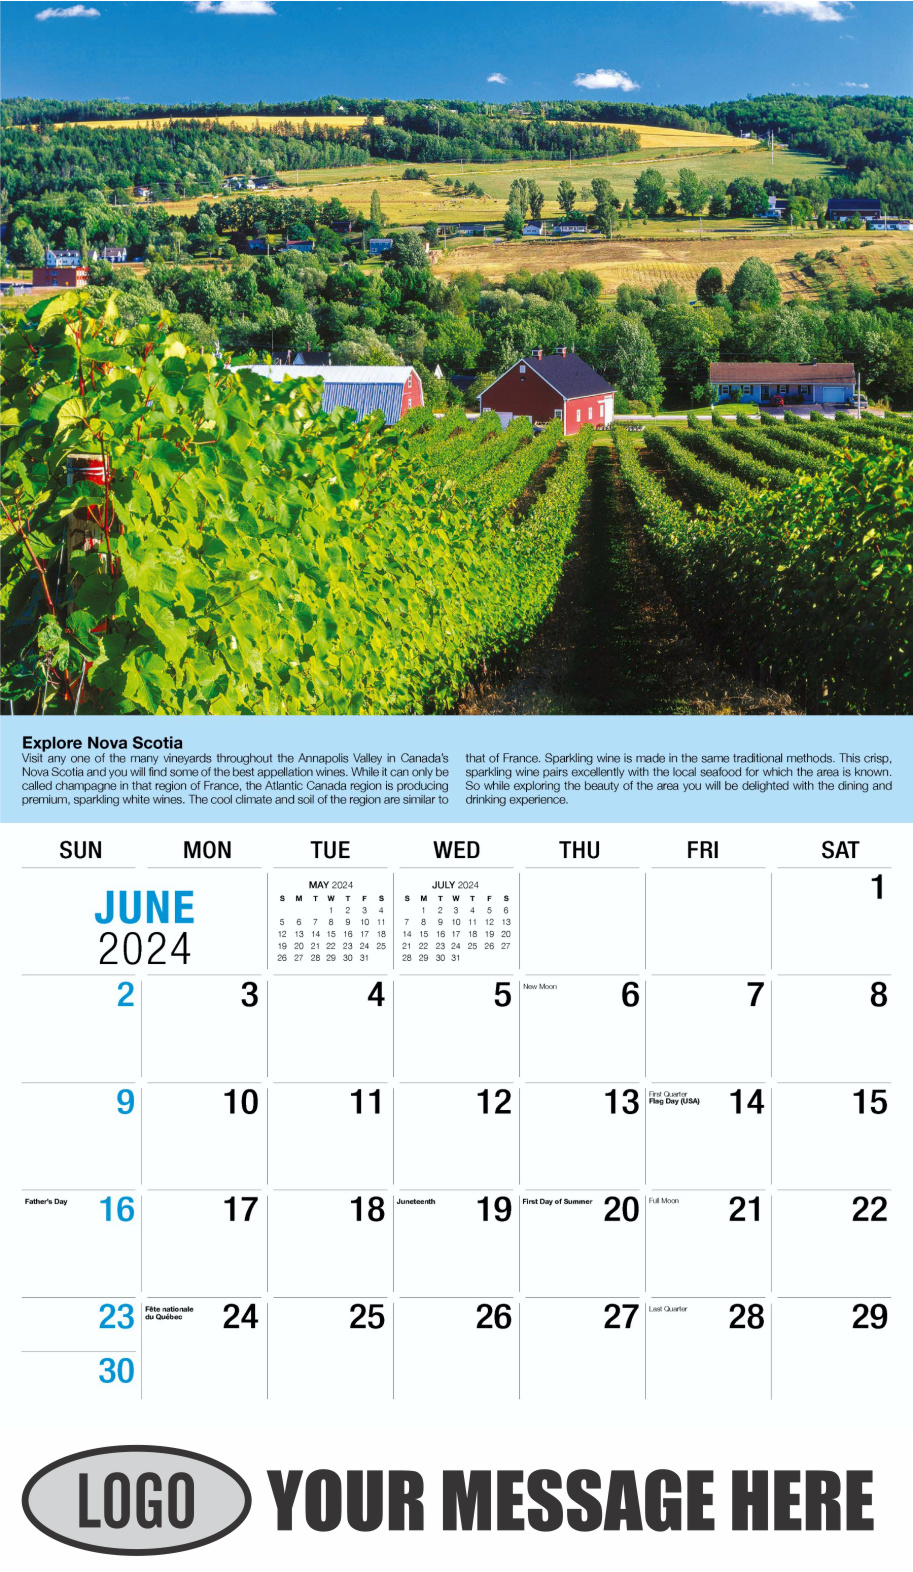 Vintages - Wine Tips 2024 Business Promo Calendar - June